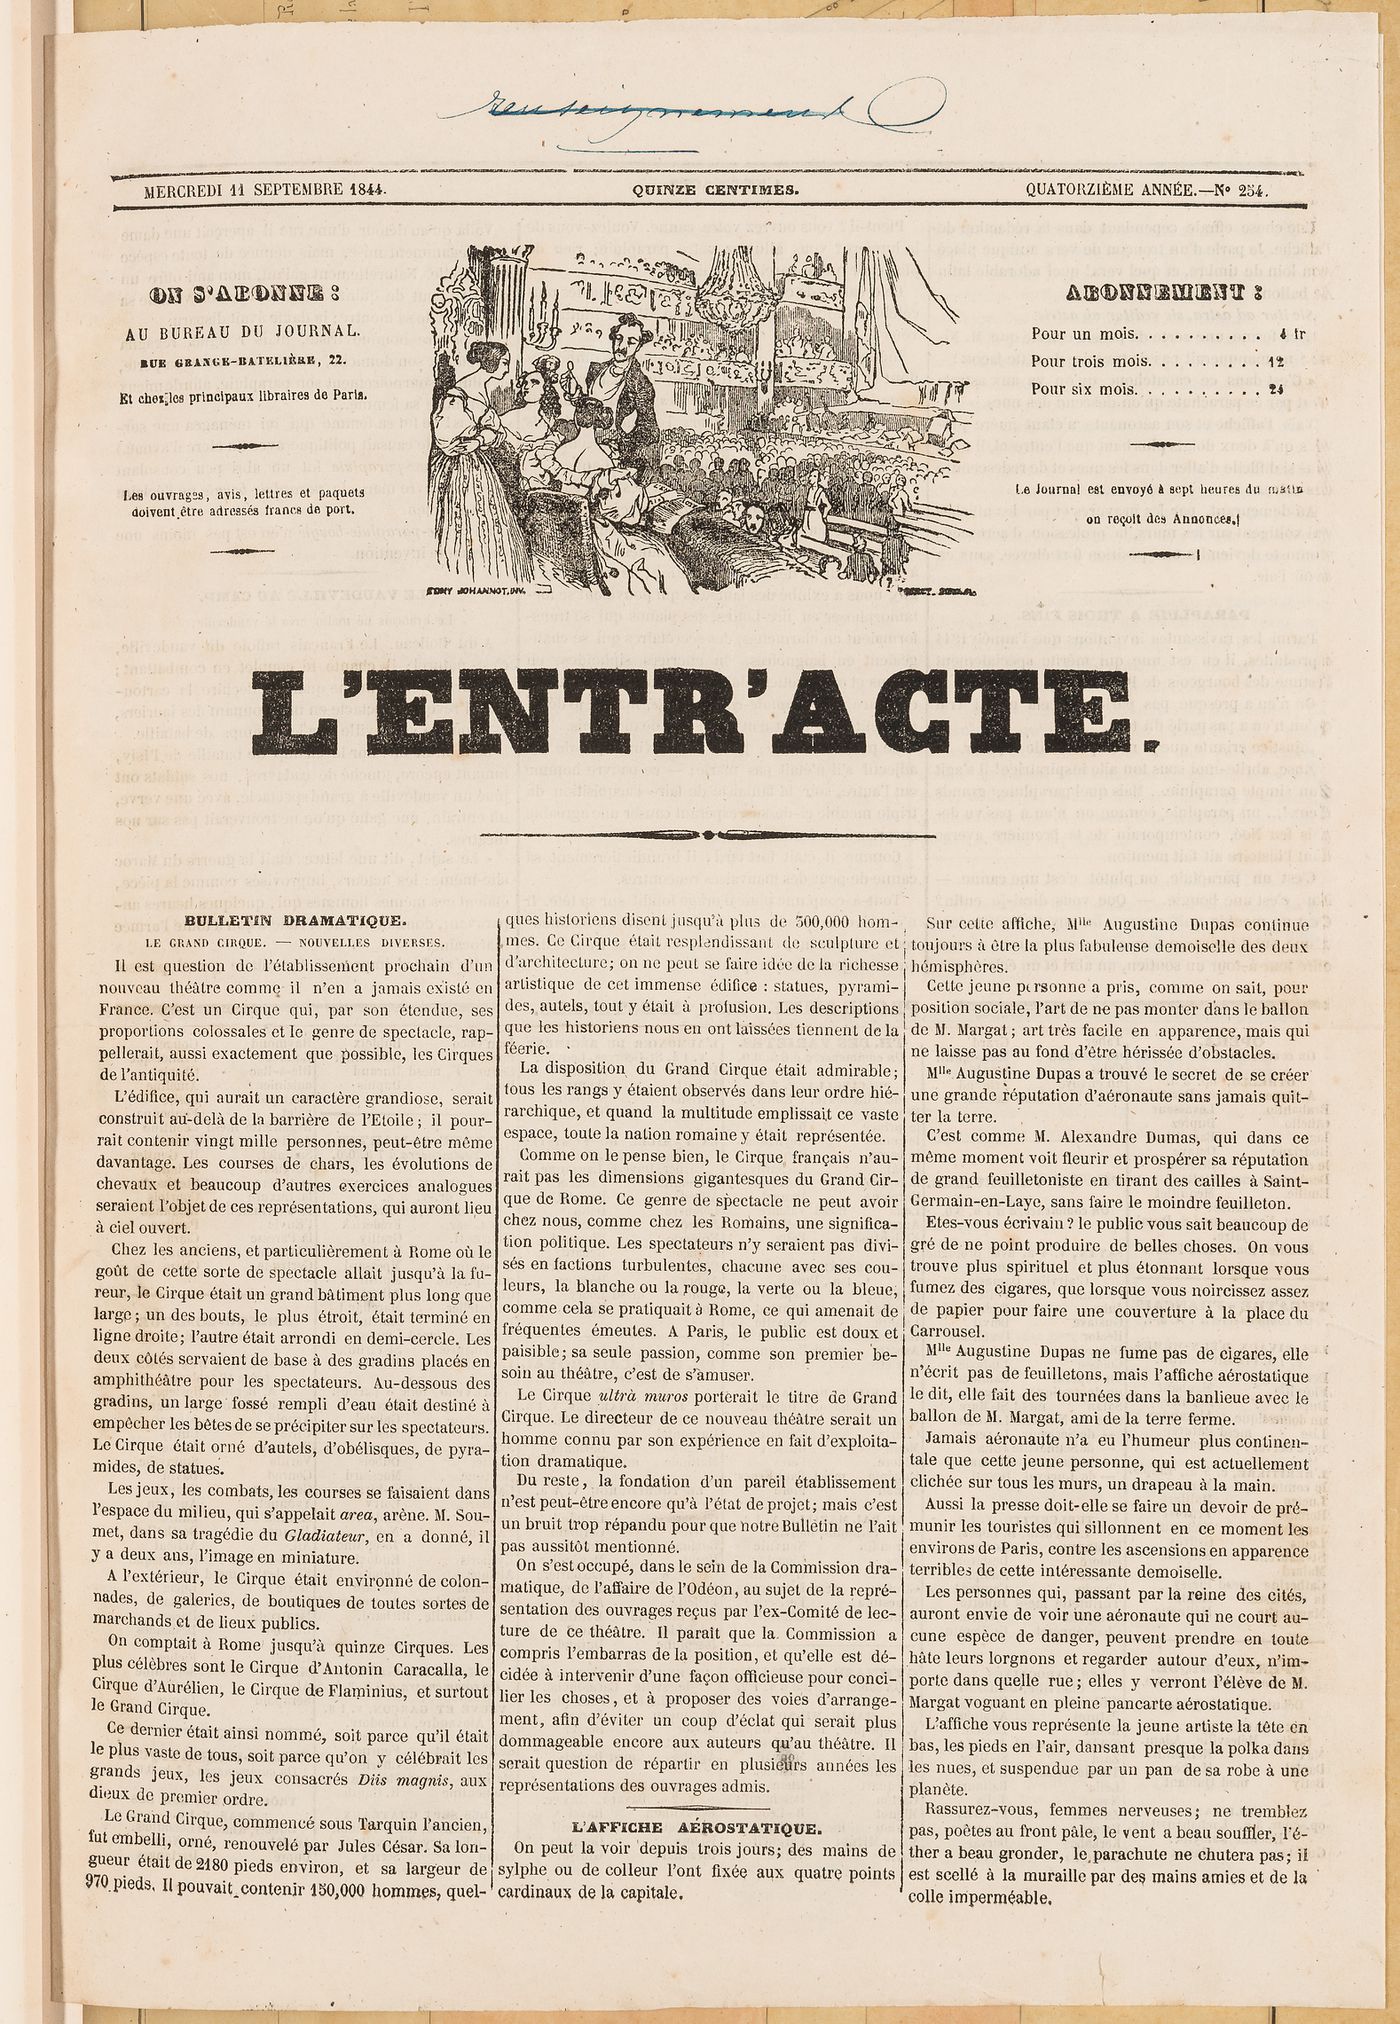 "L'Entra'cte", 11 September 1844